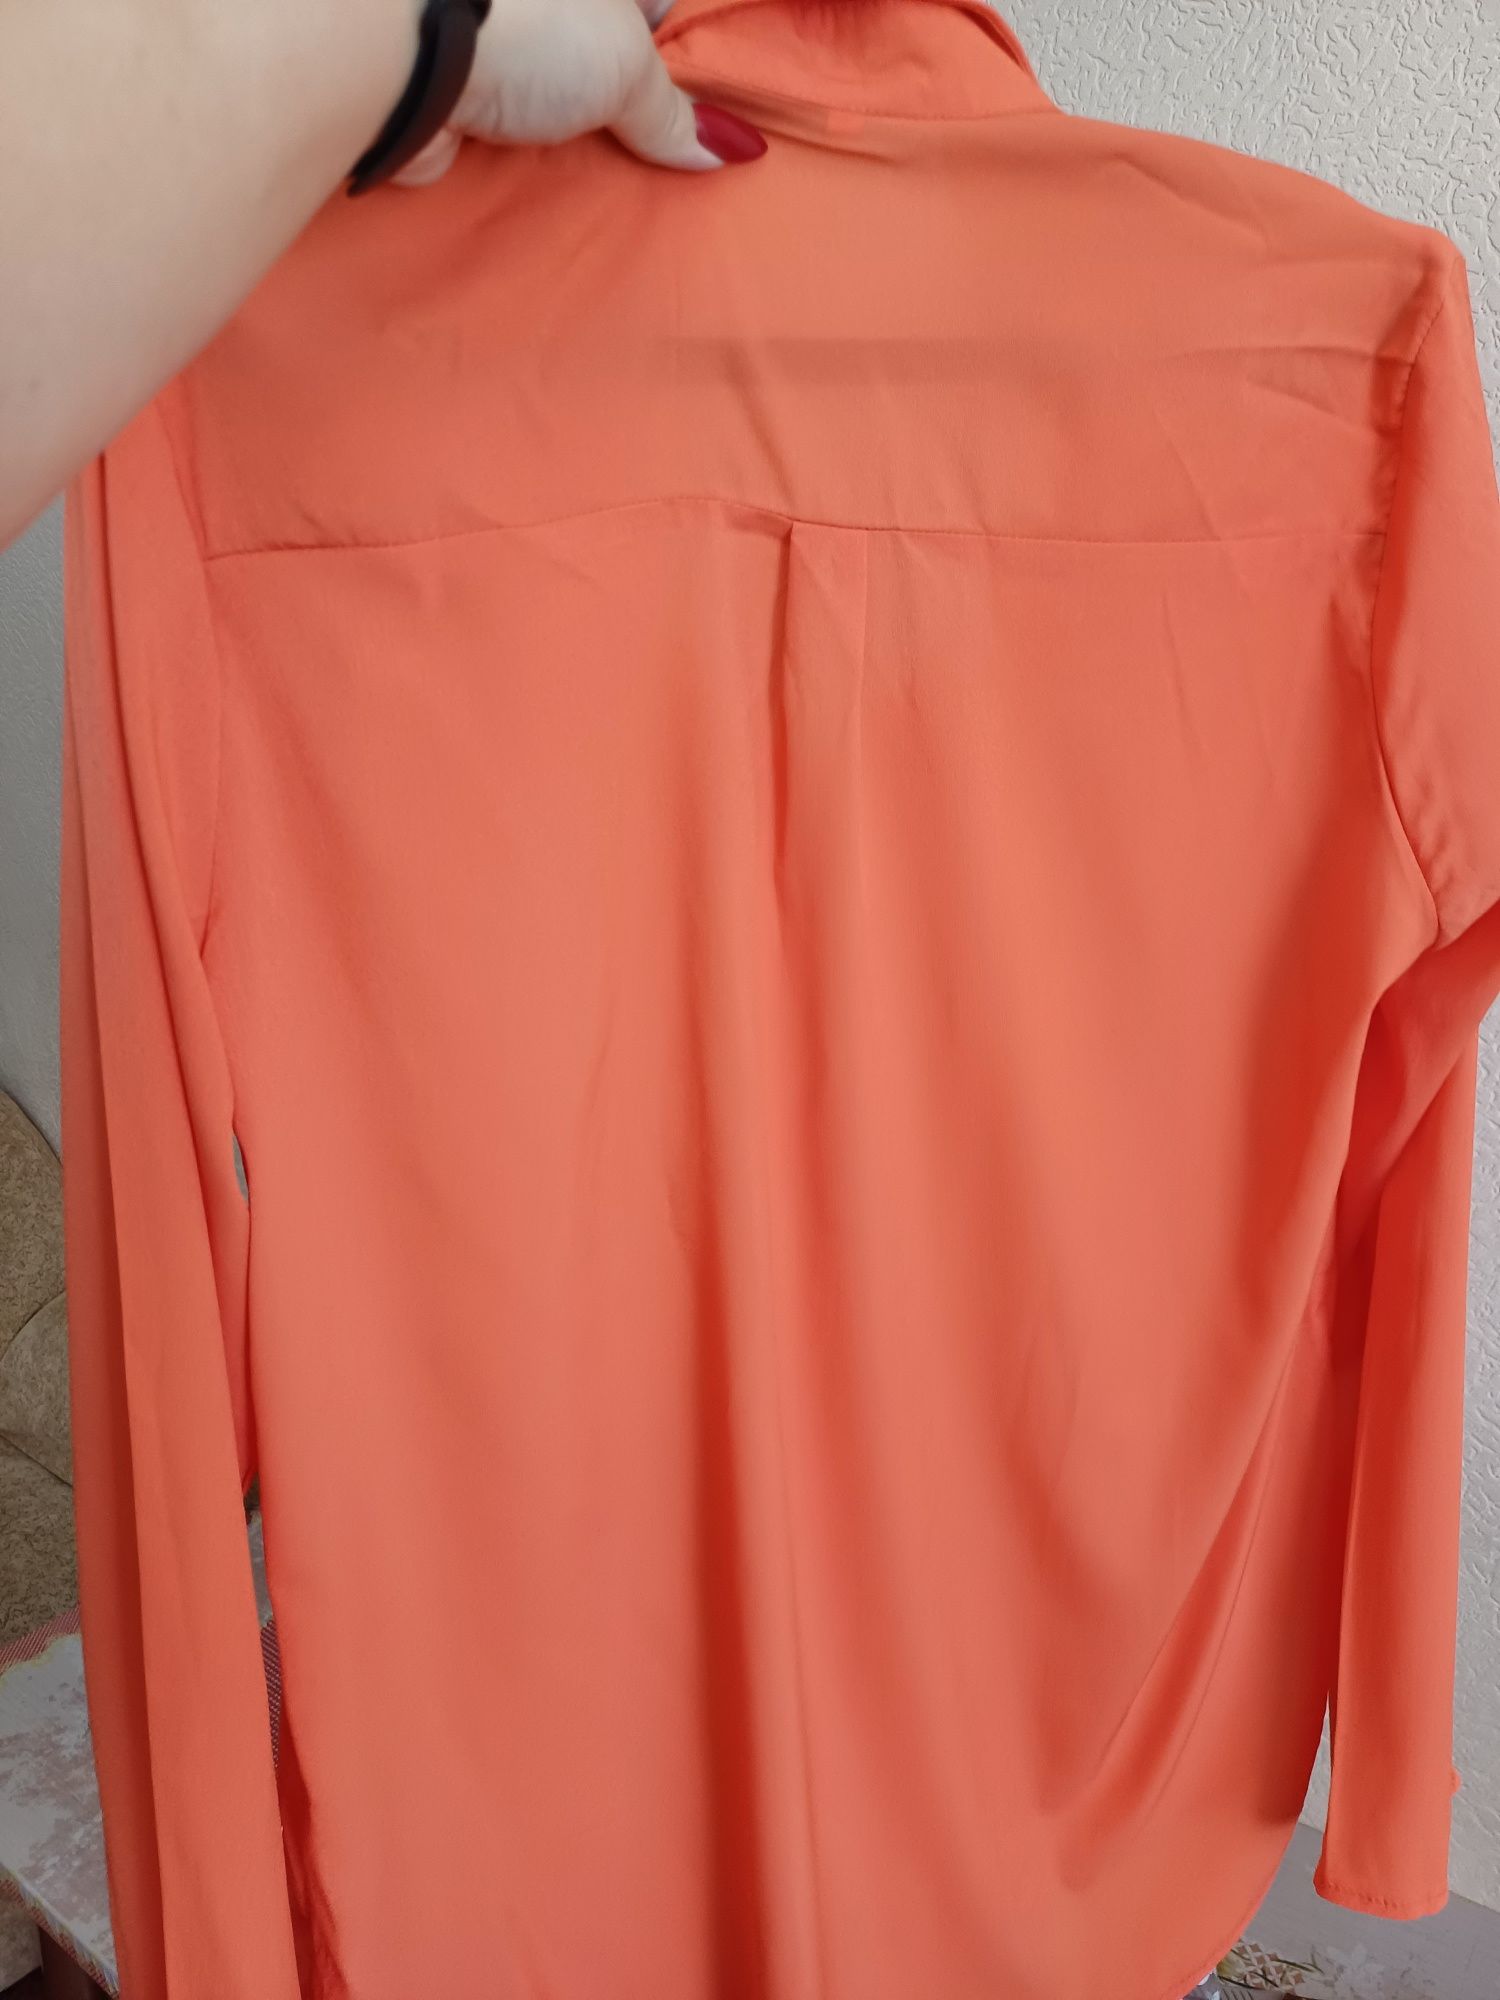 Жіноча блузка 52 розміру